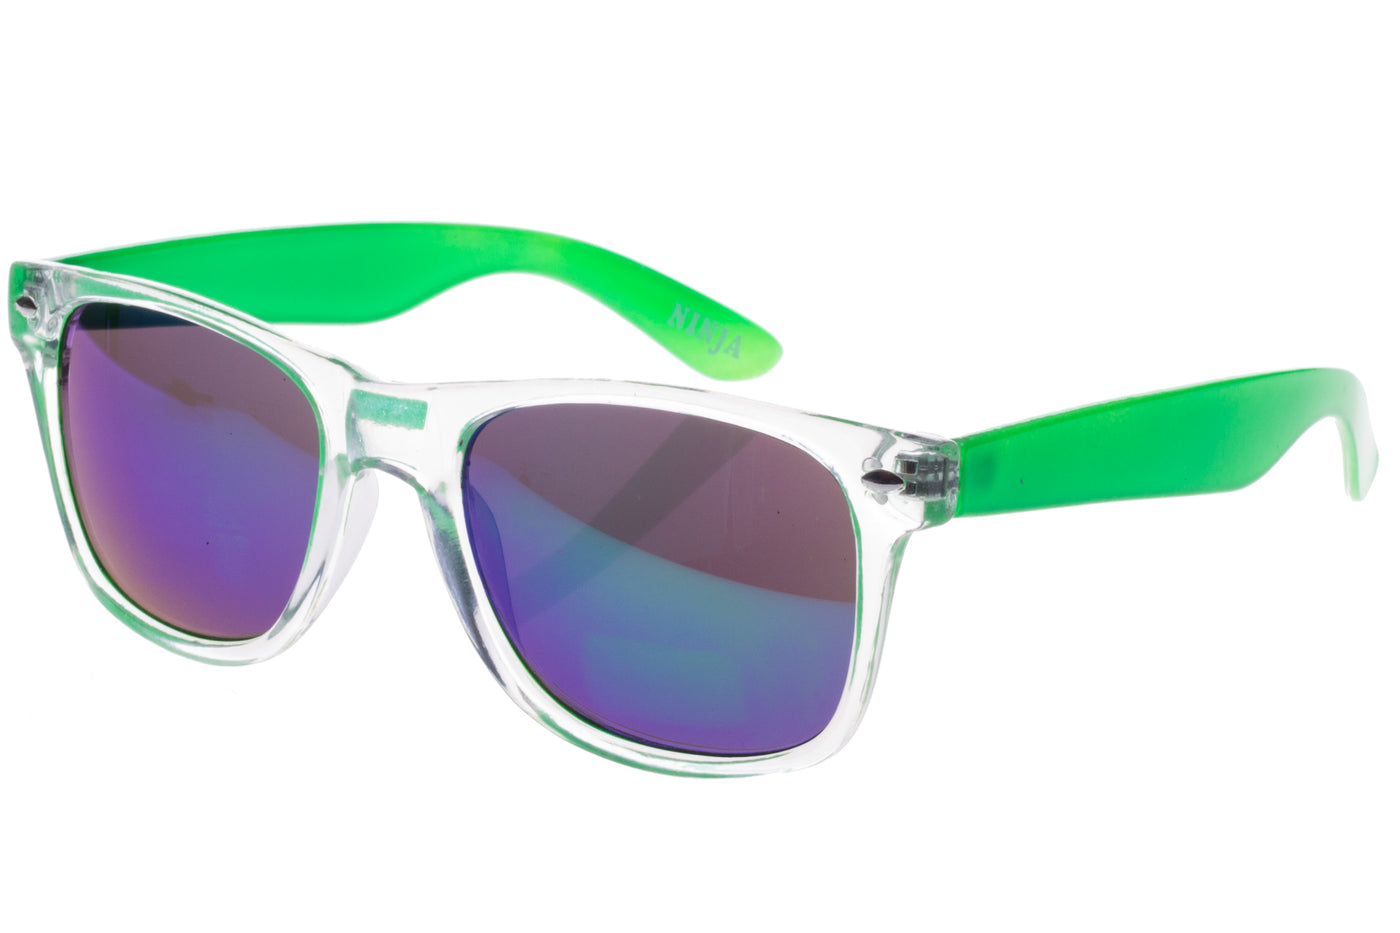 Translucent sunglasses